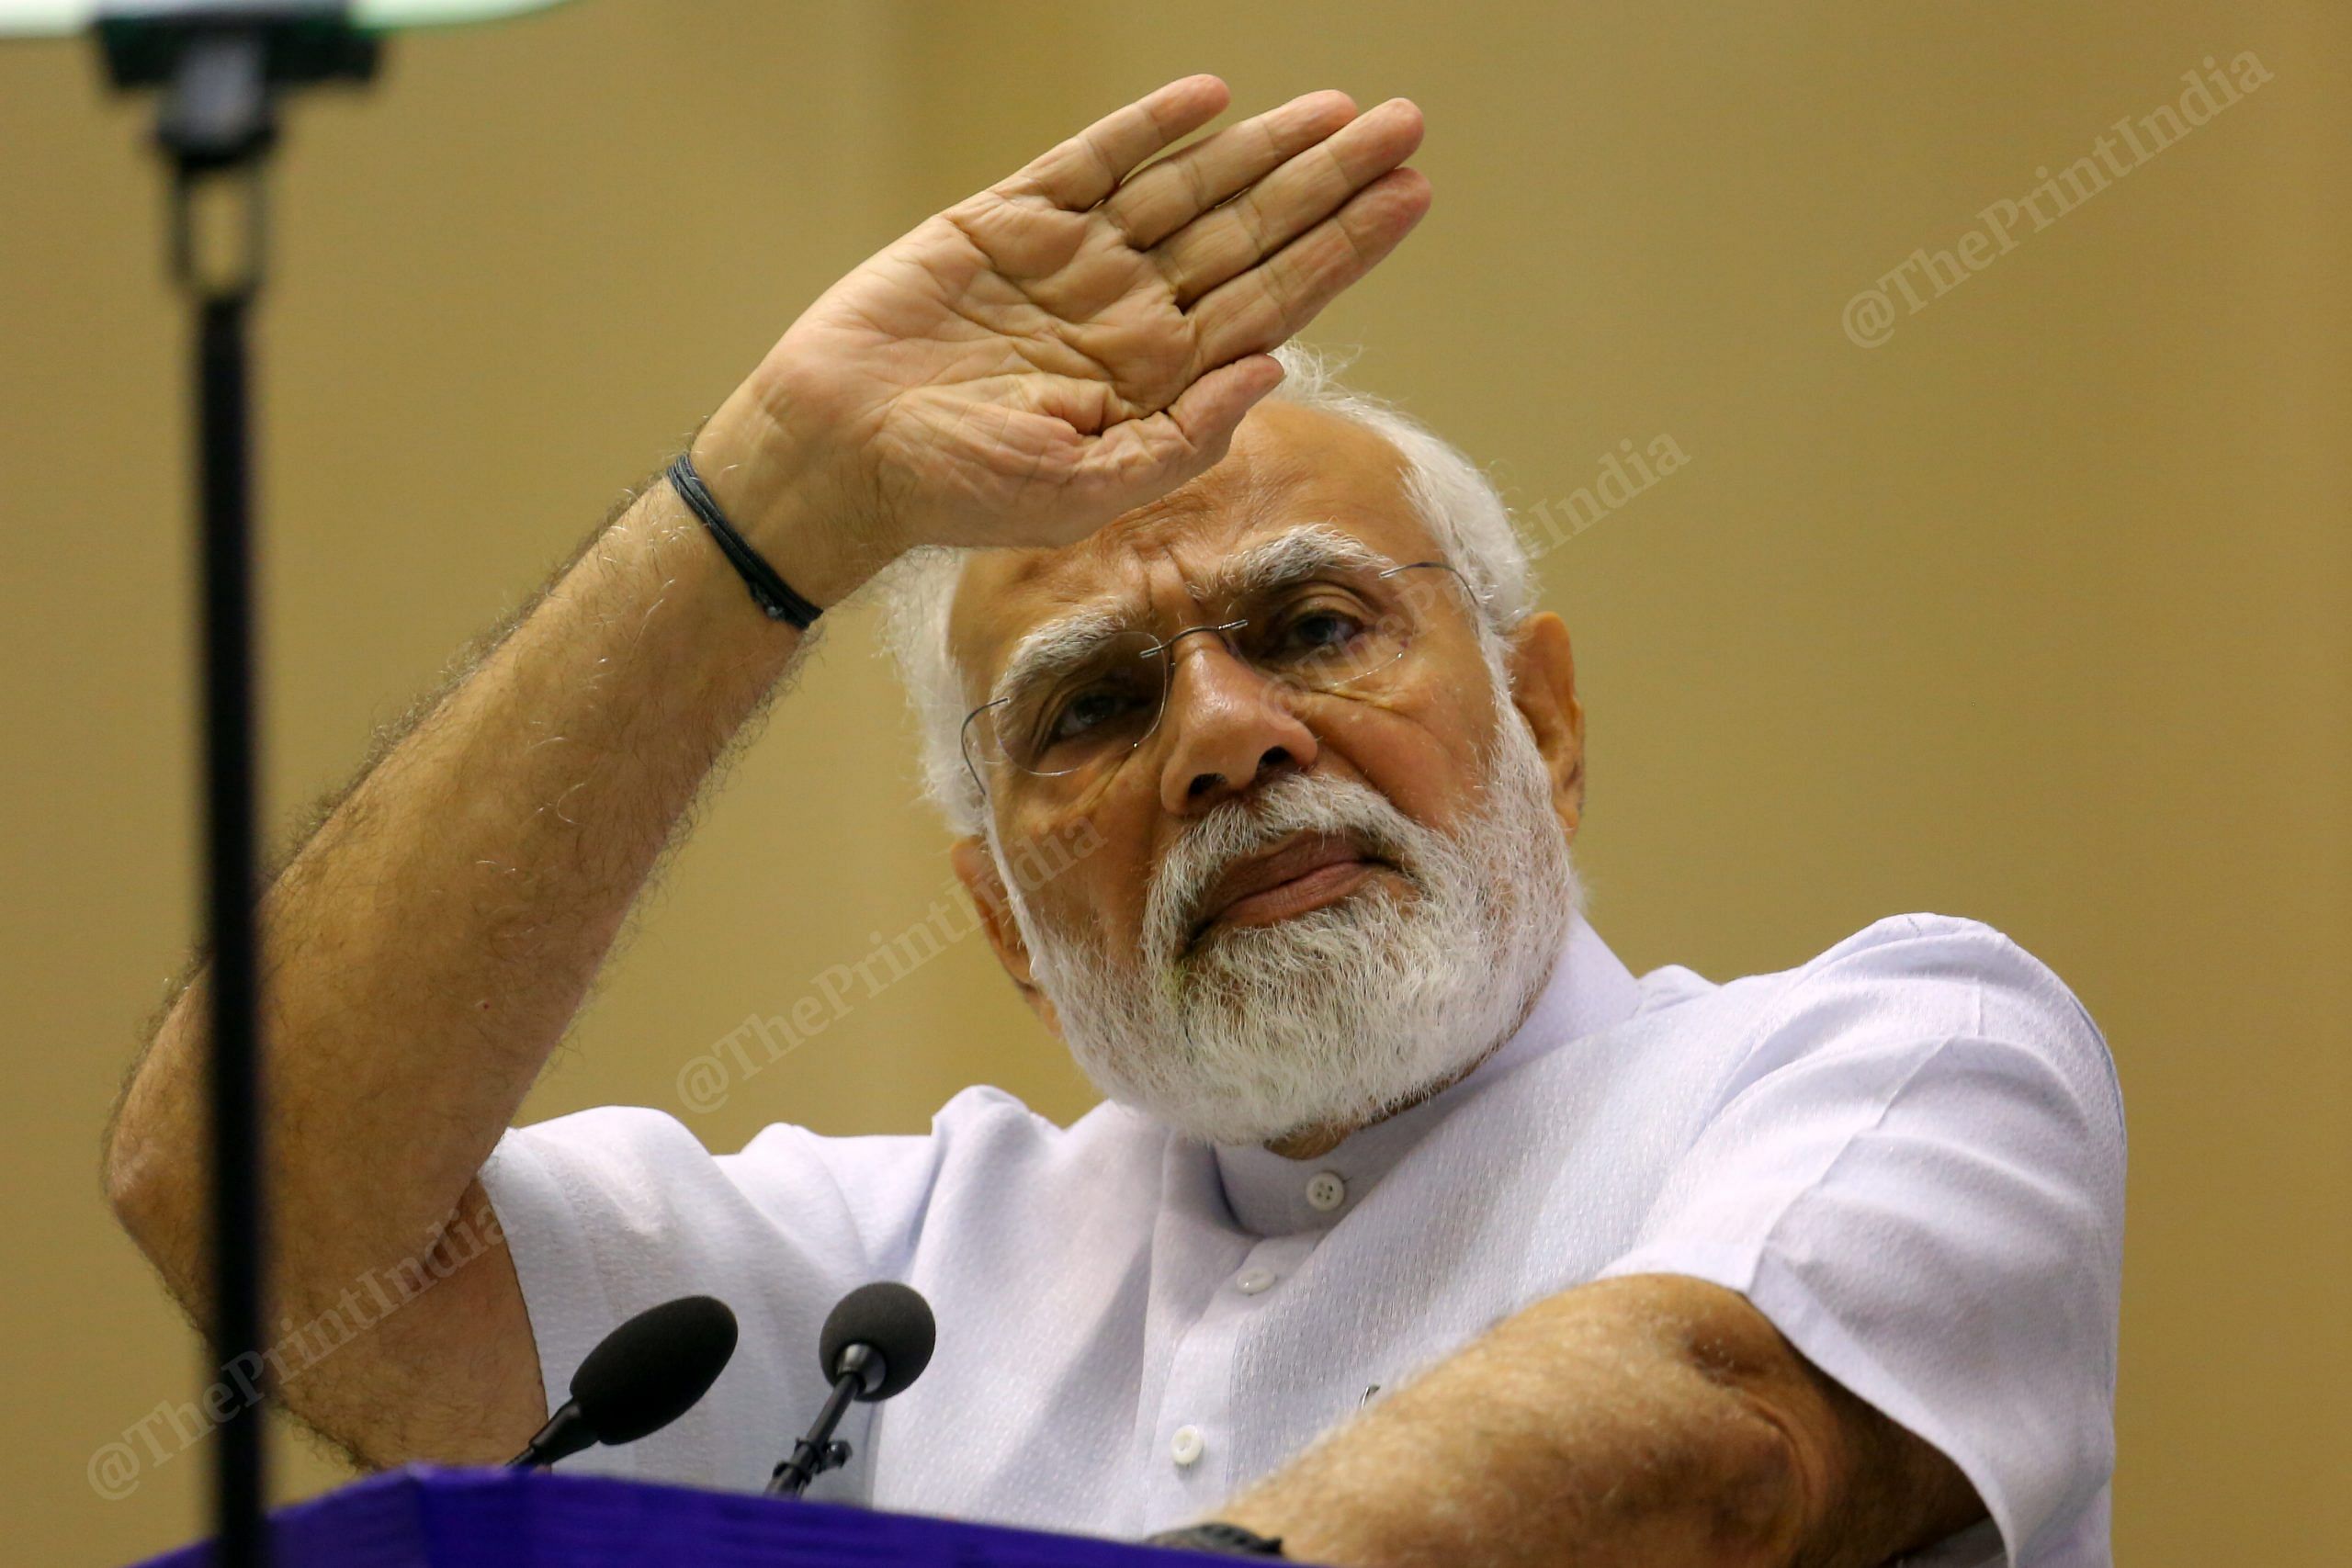 PM Modi at an event in New Delhi | Praveen Jain | ThePrint